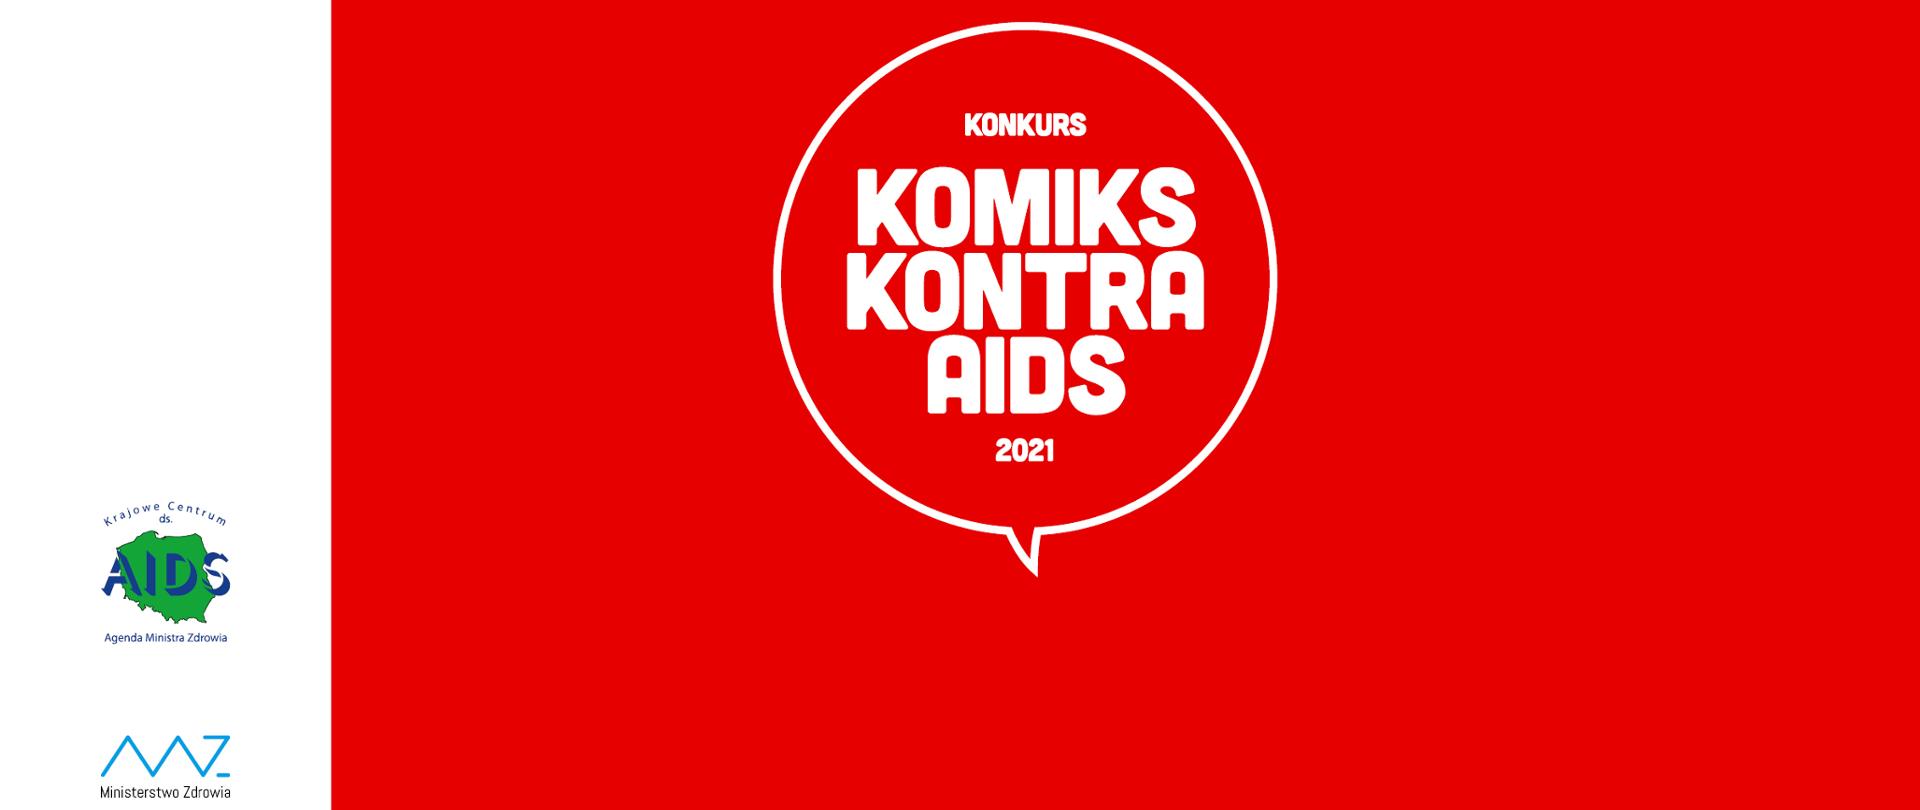 Na grafice znajduje się biały napis: KONKURS KOMIKS KONTRA AIDS 2021, który umieszczony jest w centrum na czerwonym tle. Po lewej stronie grafiki na białym tle widnieją loga Krajowego Centrum ds. AIDS oraz Ministerstwa Zdrowia.